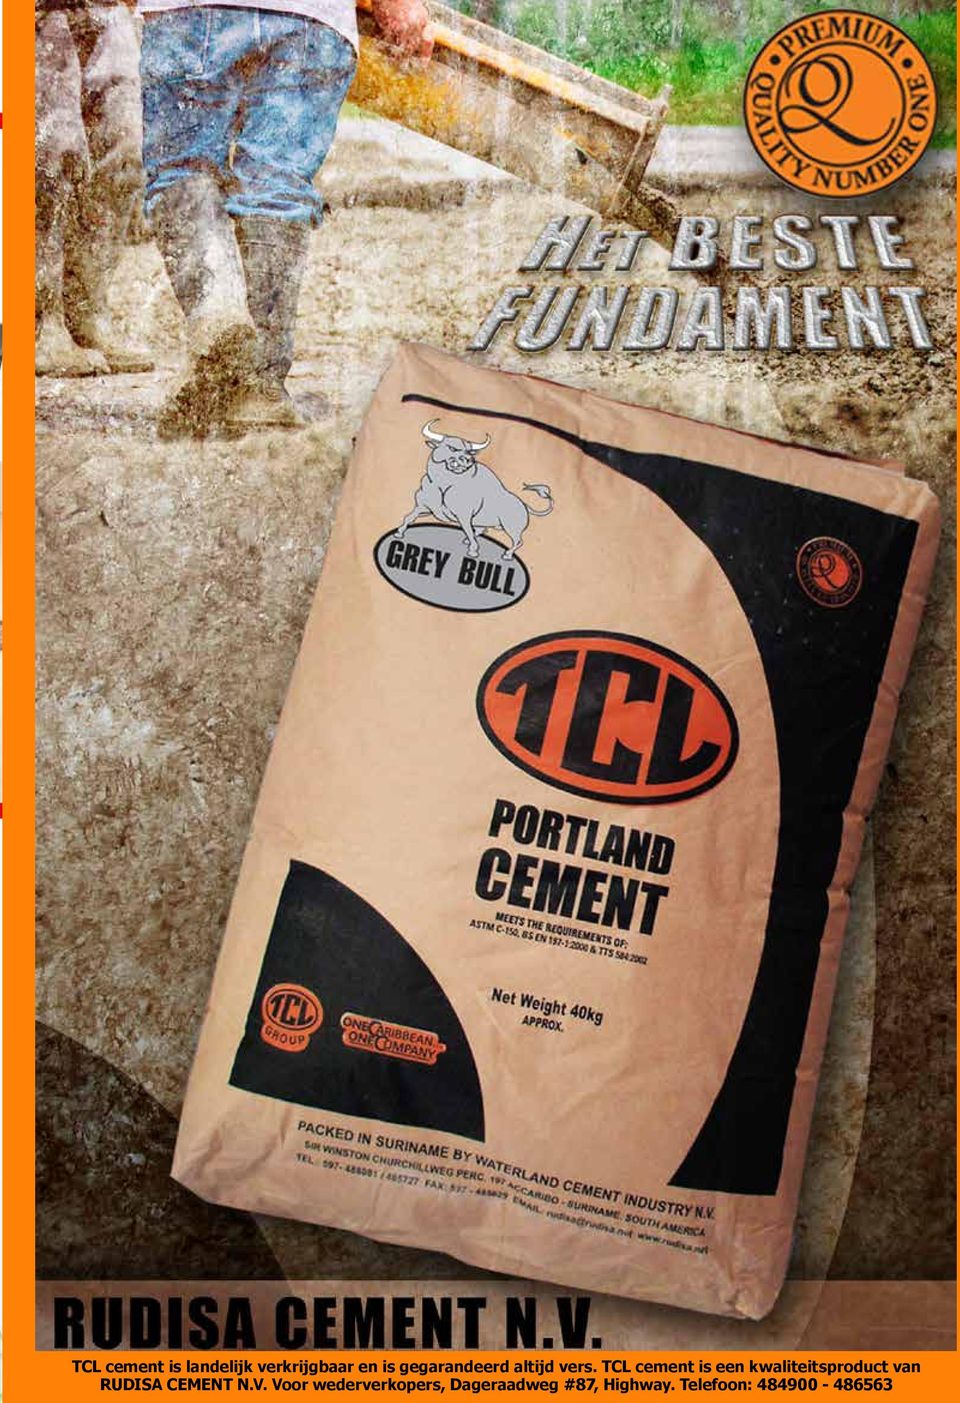 TCL cement is een kwaliteitsproduct van RUDISA